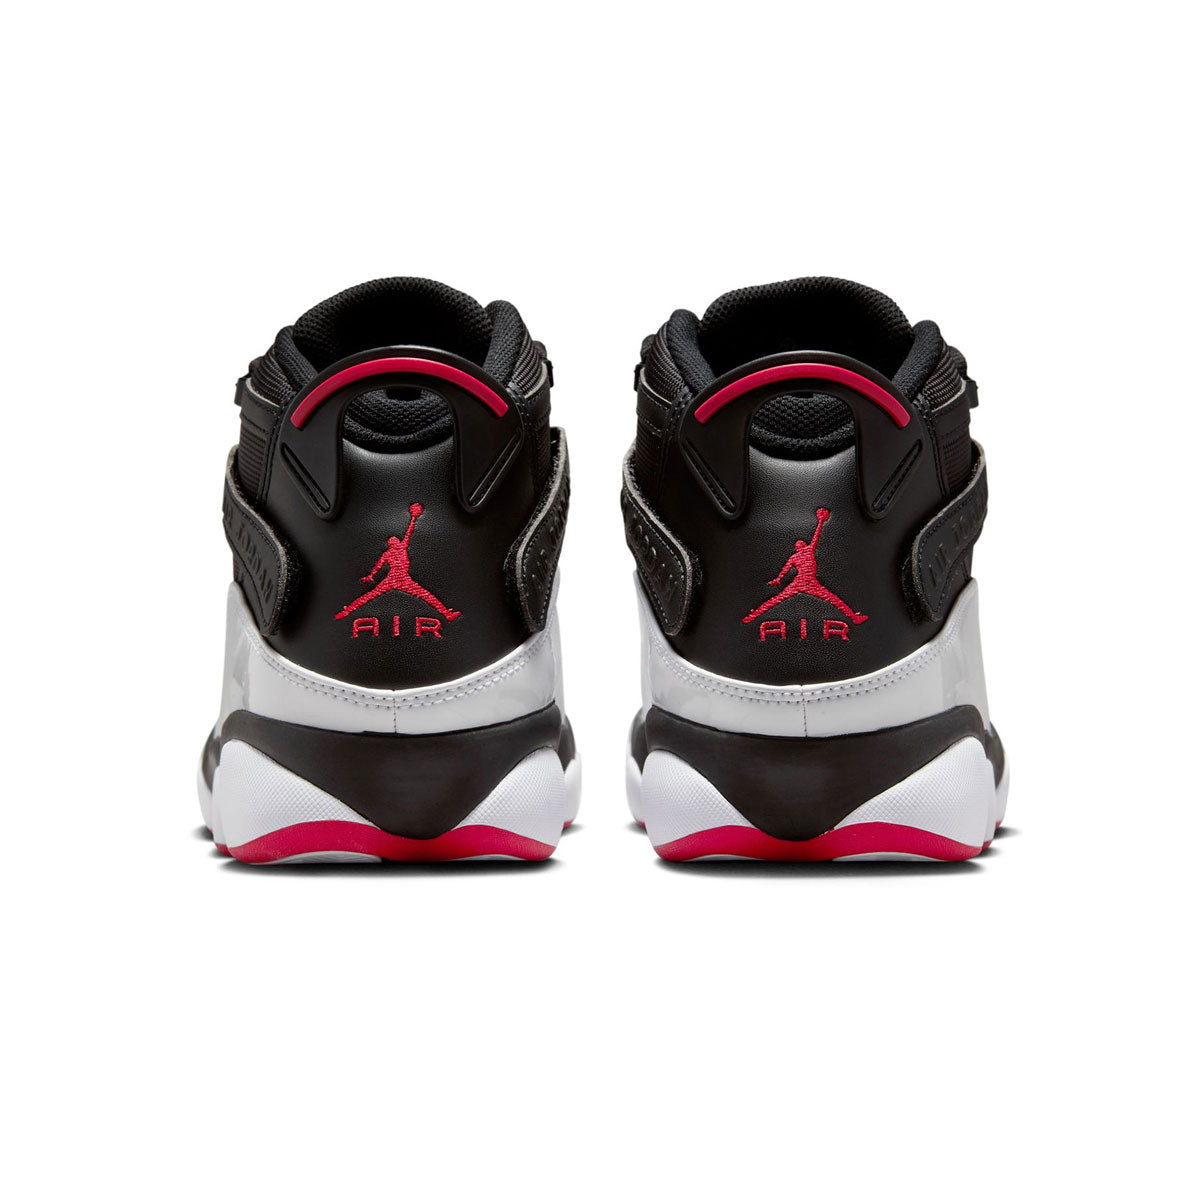 Air Jordan 6 Rings Men's